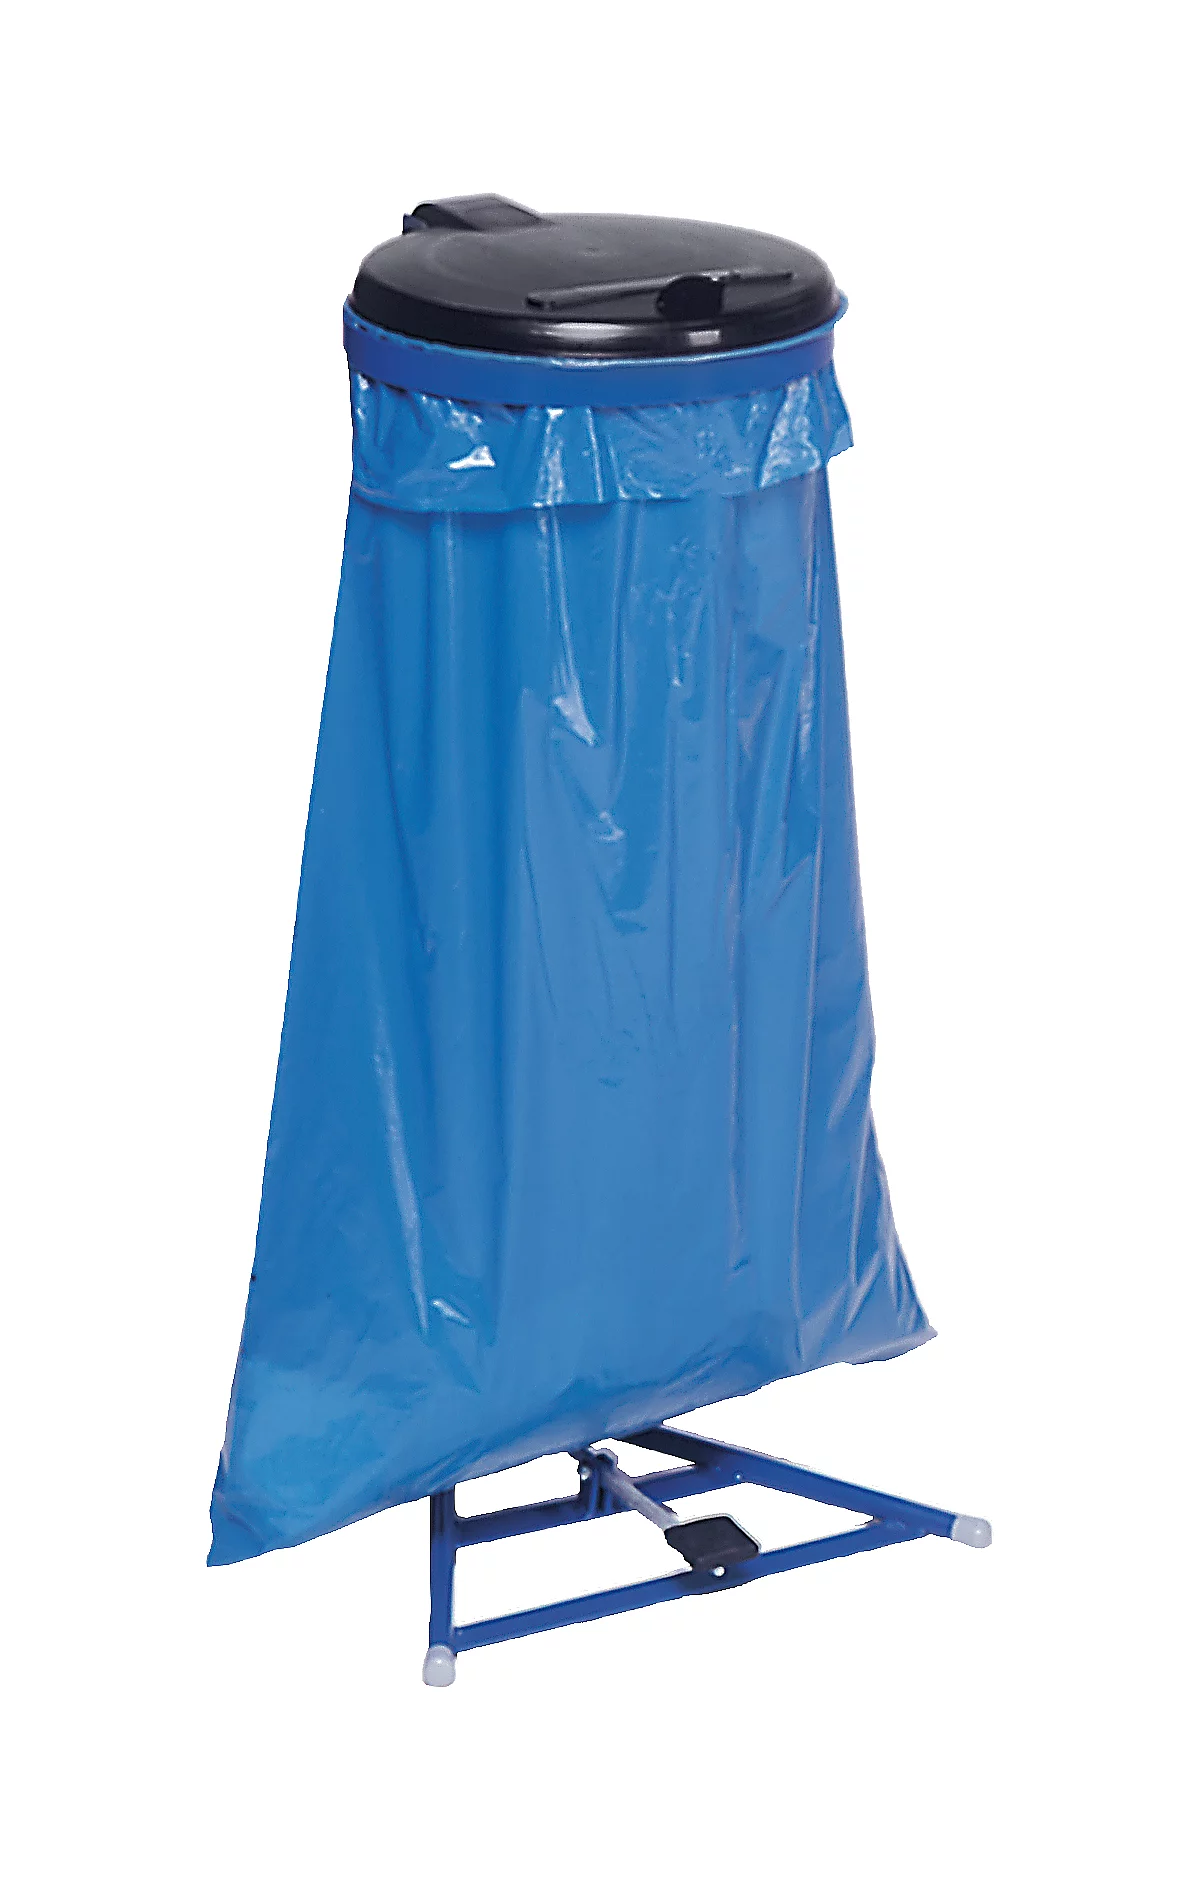 Support pour sacs poubelle de 120 litres, avec couvercle et pédale